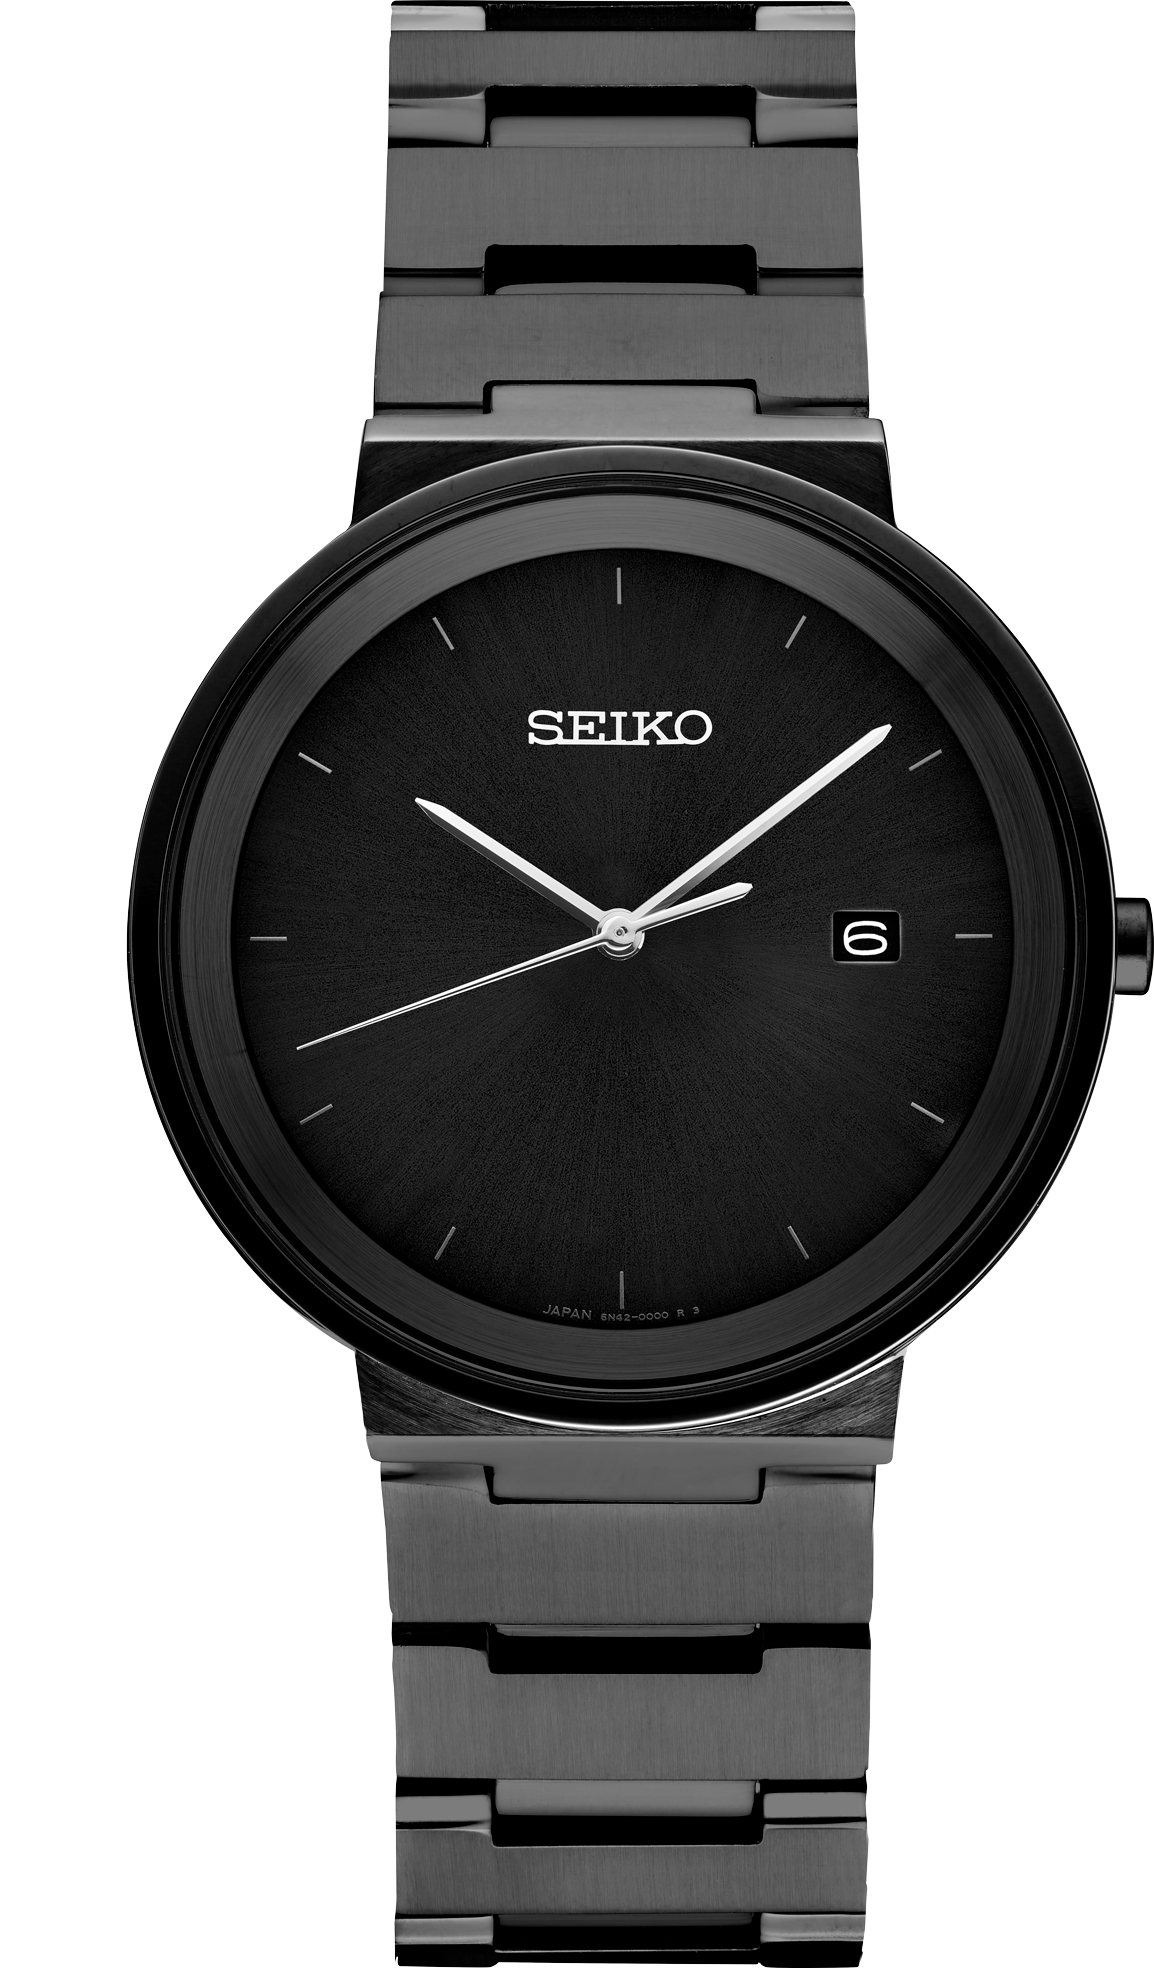 Seiko 5 Sports Men's Black Watch - SRPD79K1M4 for sale online | eBay